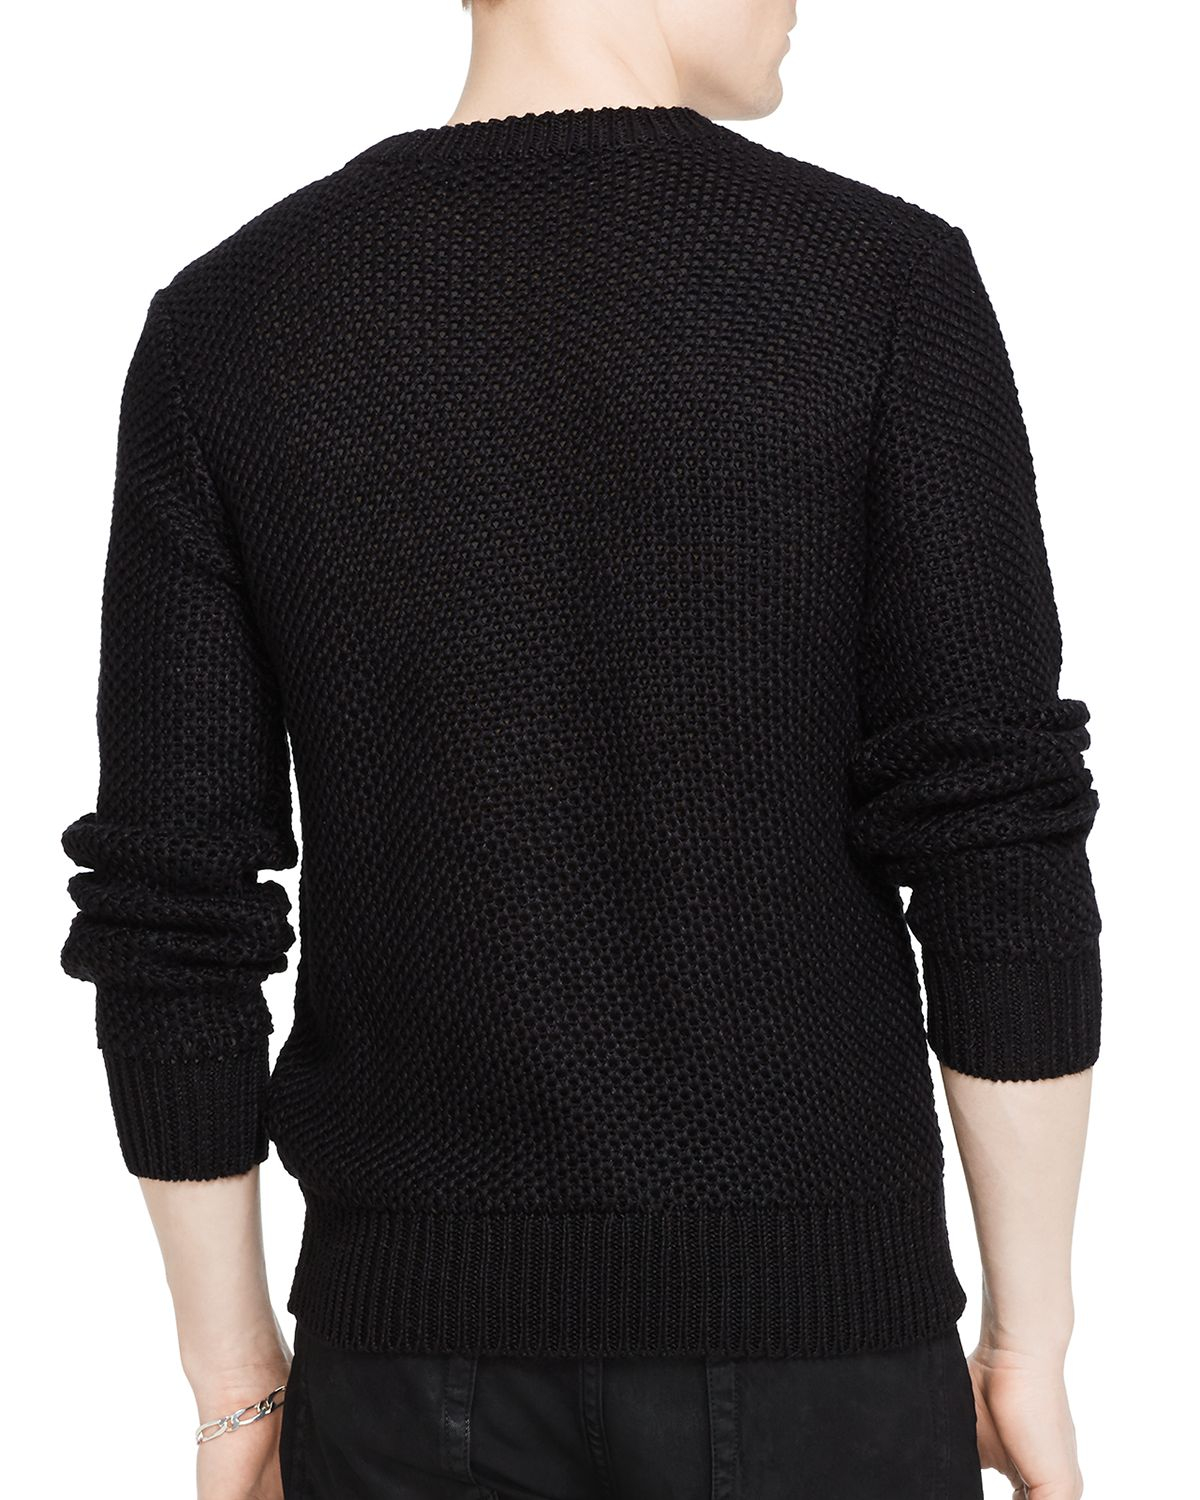 Lyst - Ralph Lauren Black Label Linen Textured Sweater in Black for Men